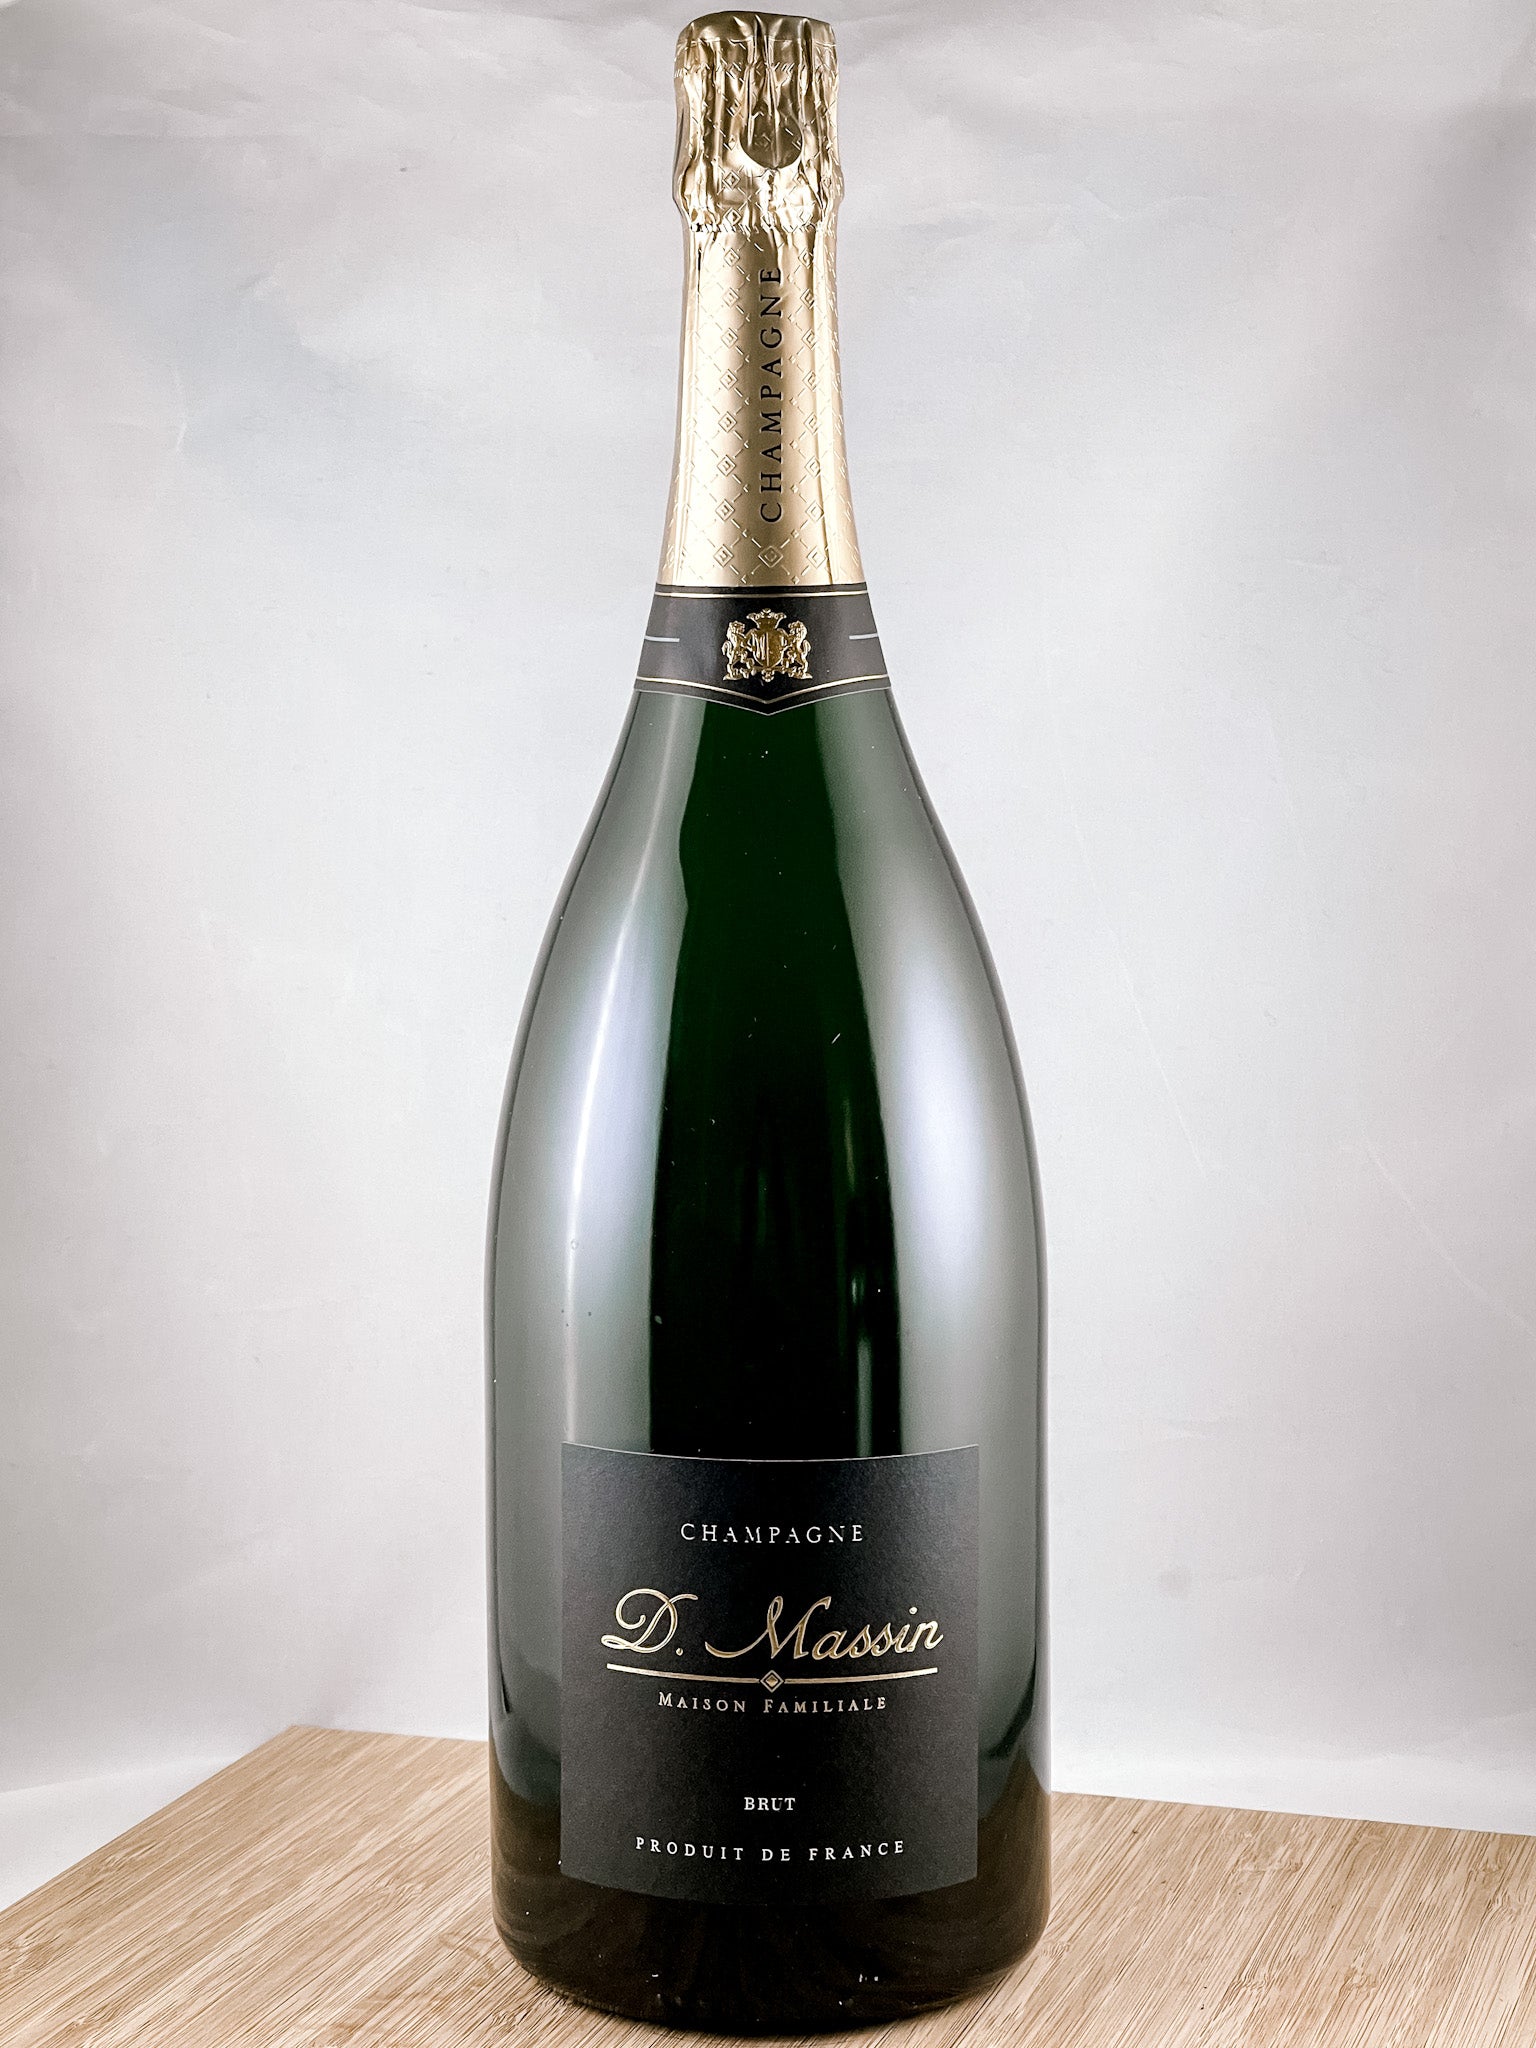 Magnum Champagne Brut 250ème anniversaire 1983 - Moët & Chandon